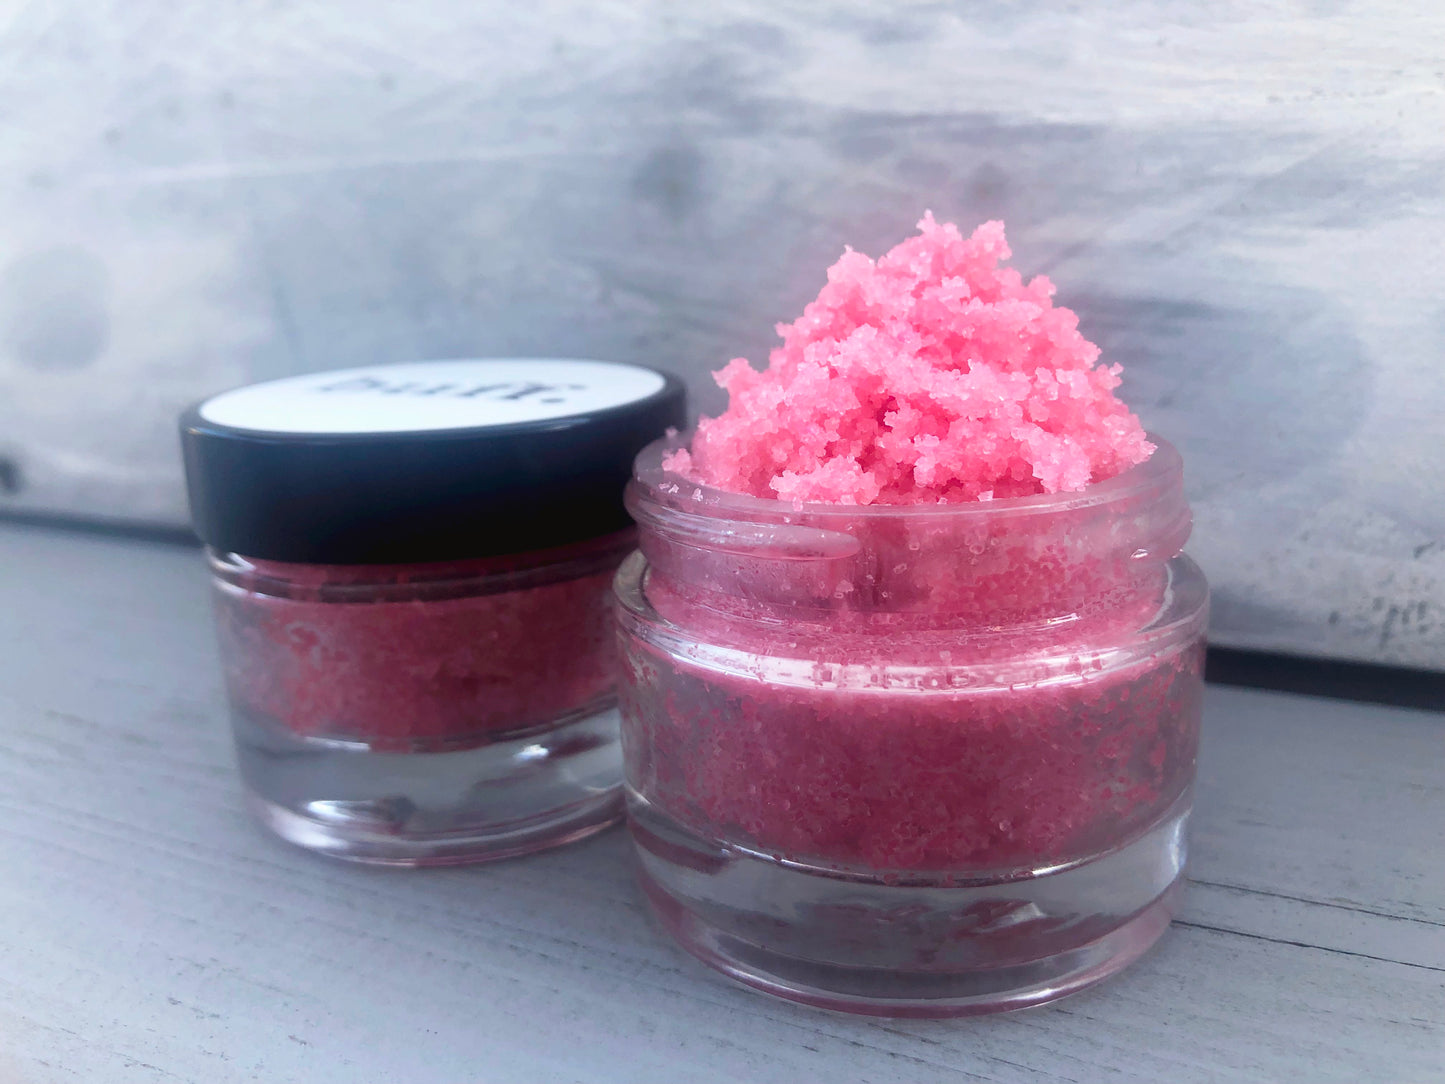 Pink strawberry sugar lip scrub used for exfoliating in a glass jar